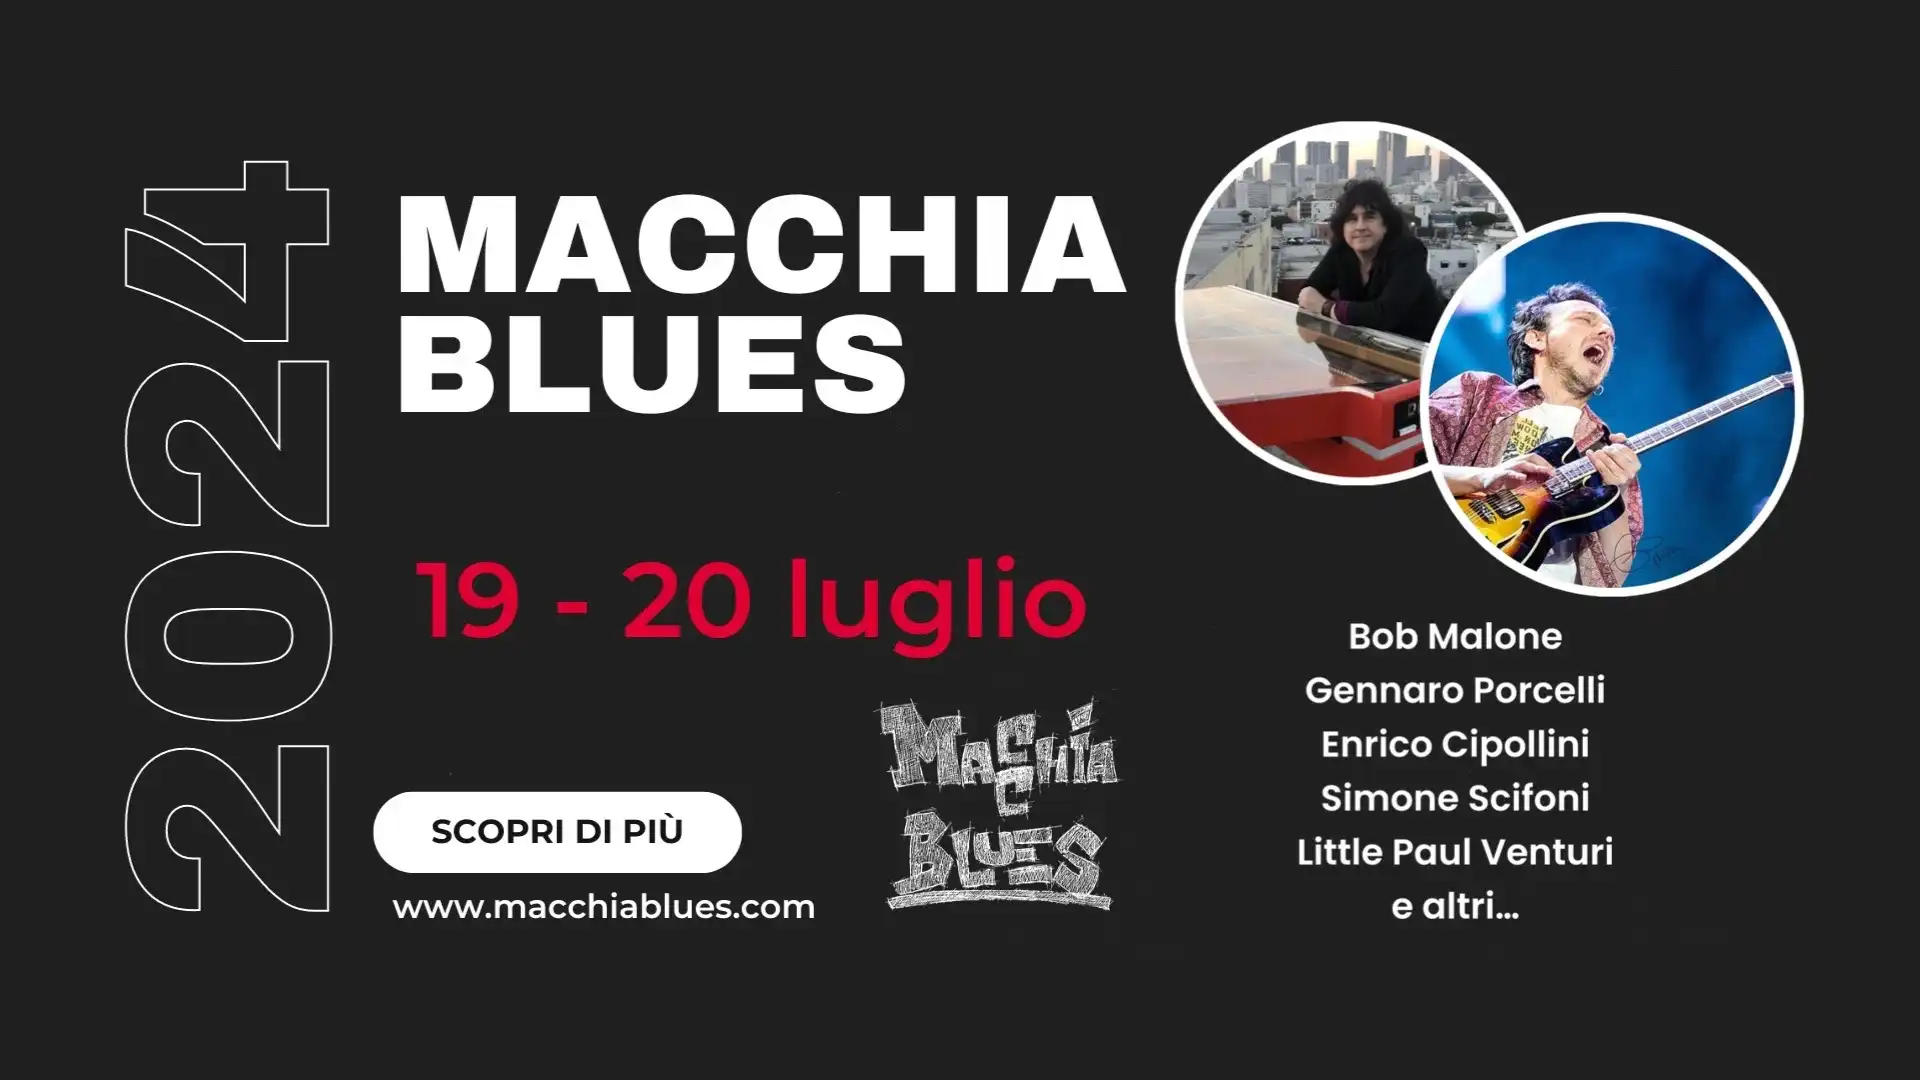 La magia del Blues torna a Macchia d'Iseenia il 19 e 20 luglio. Appuntamento con il Macchia Blues